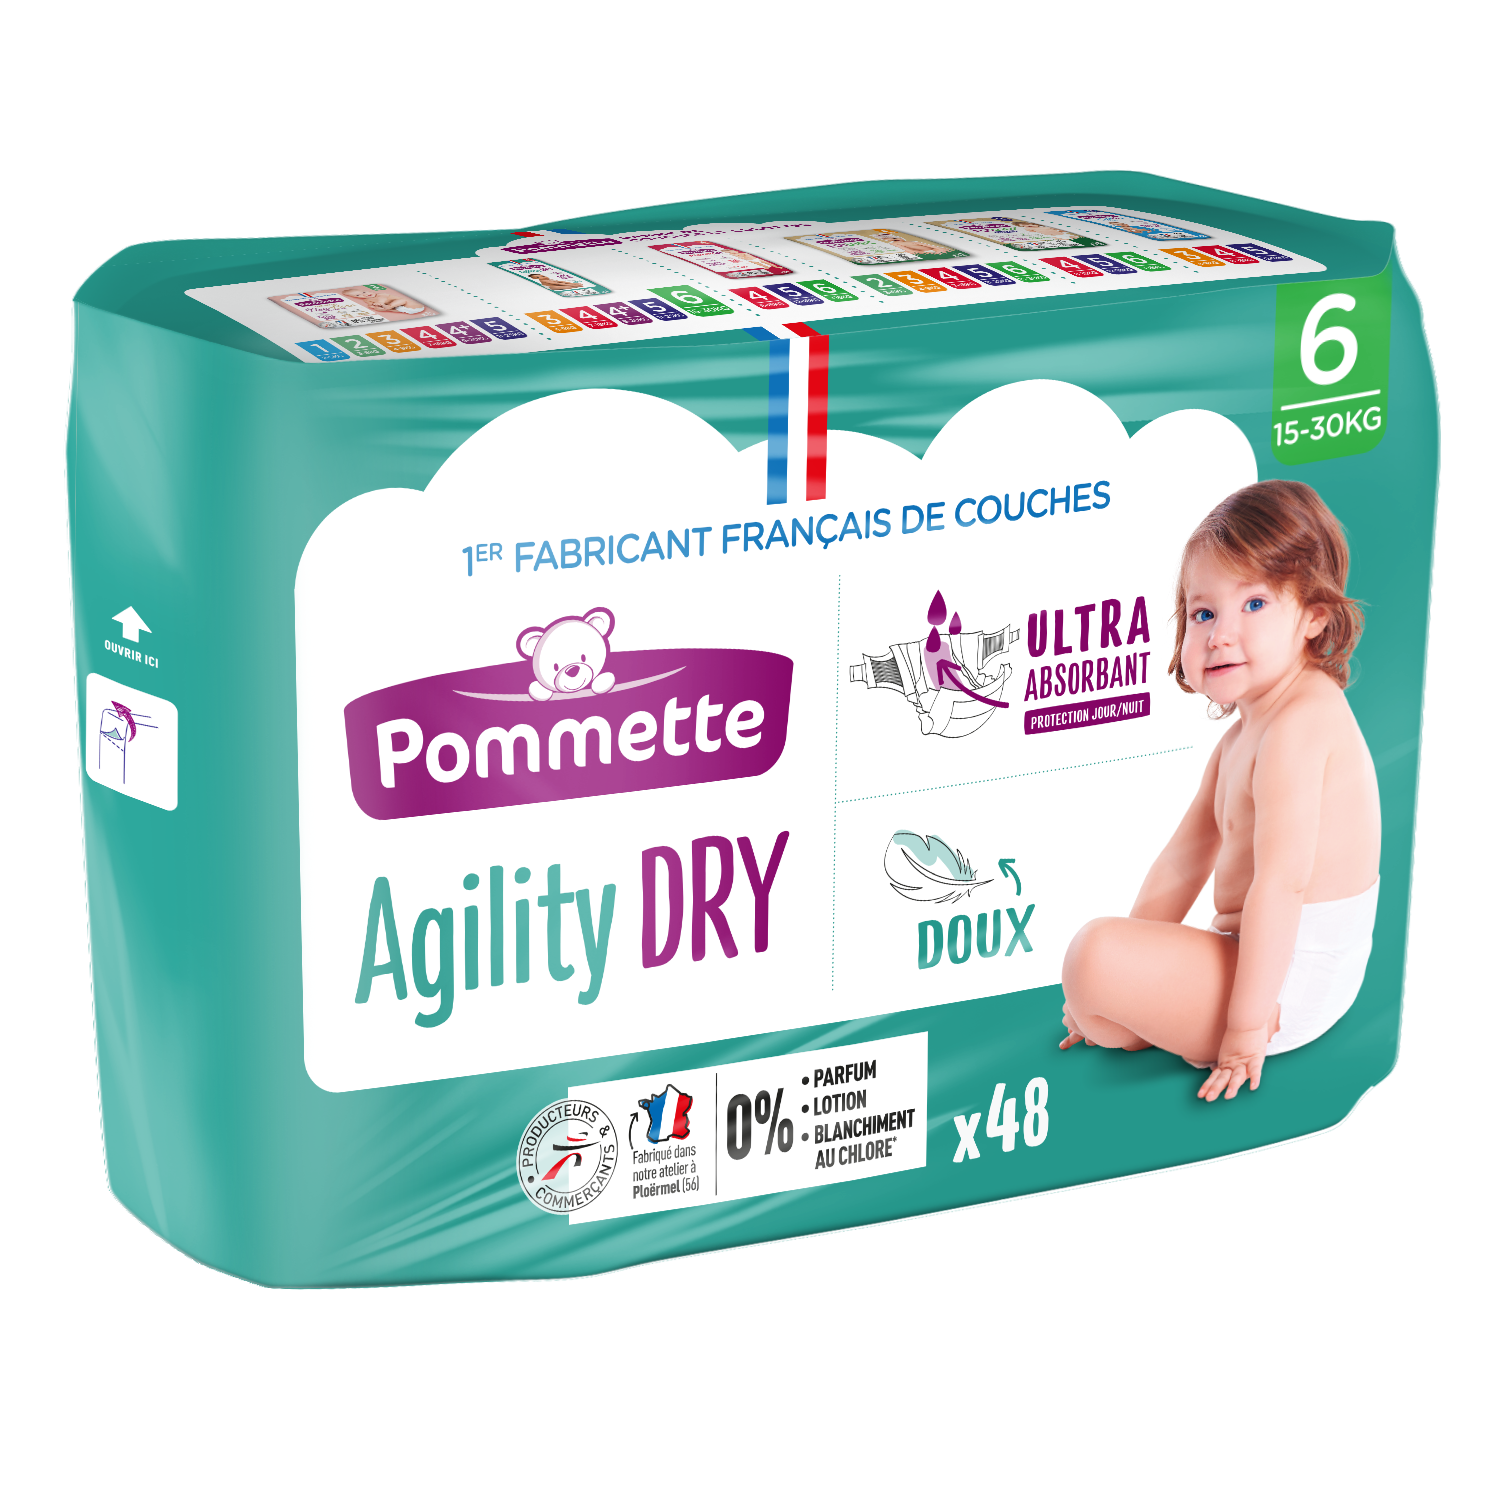 Couches Pommette Agility - Couches bébé fabriqué en France.